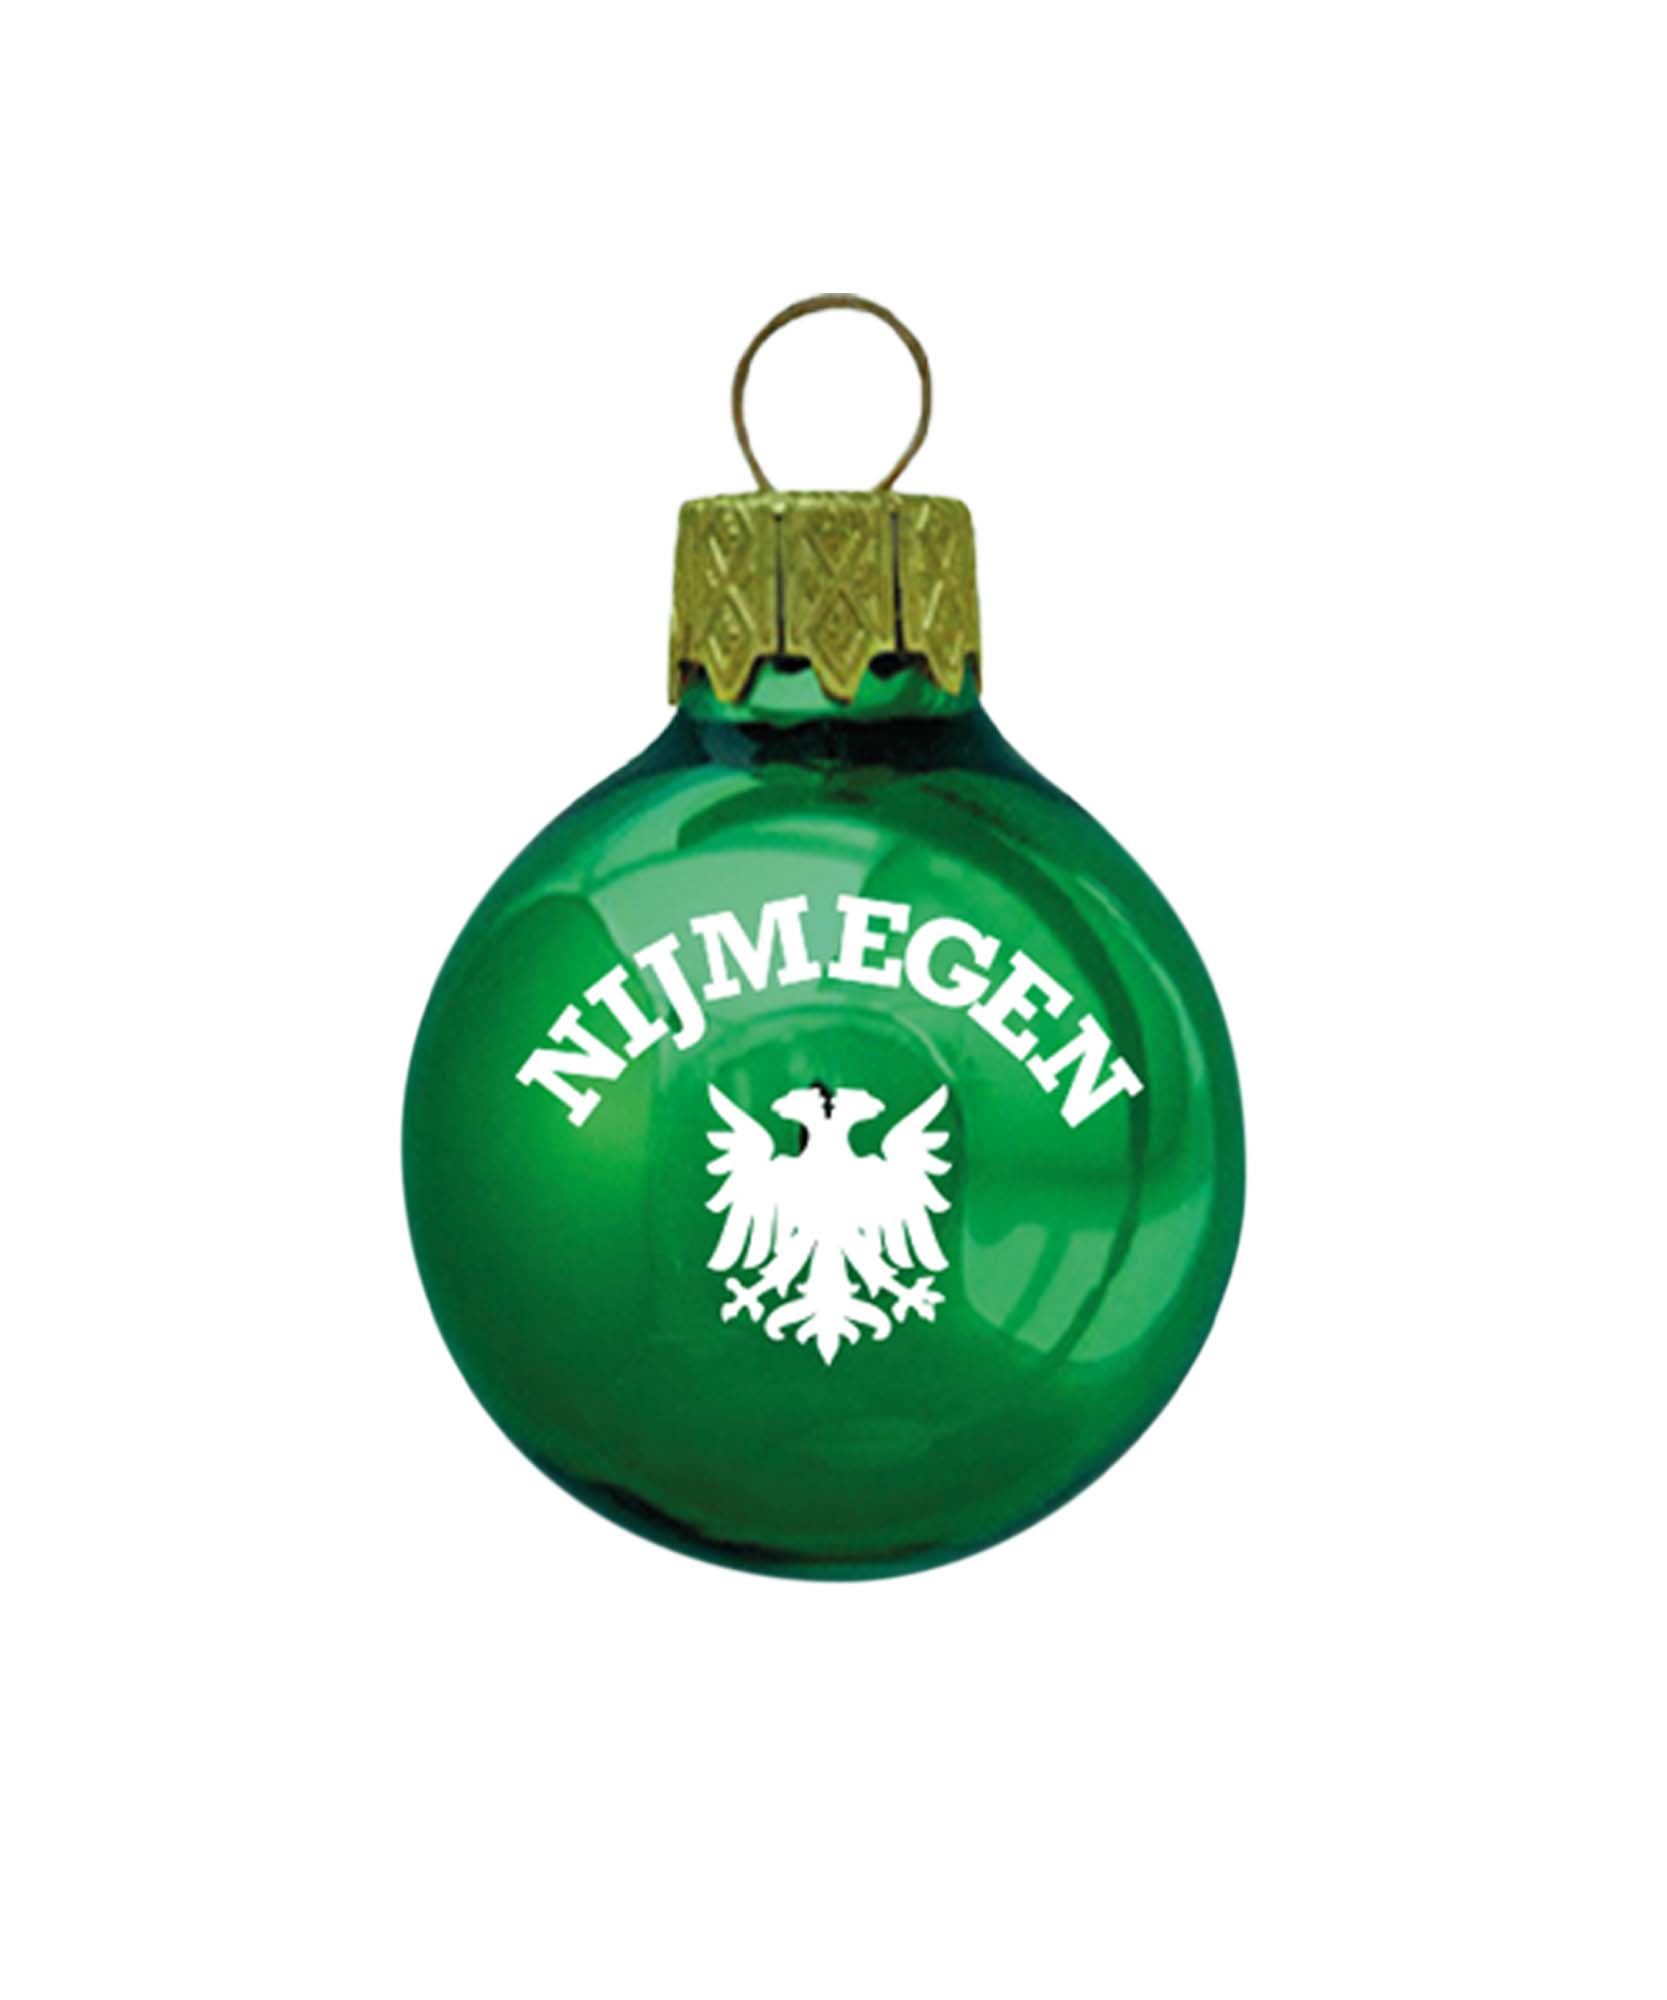 Prachtige groene kerstbal met het wapen van Nijmegen voor kerstmis. Een leuke must-have voor elke kerstboom